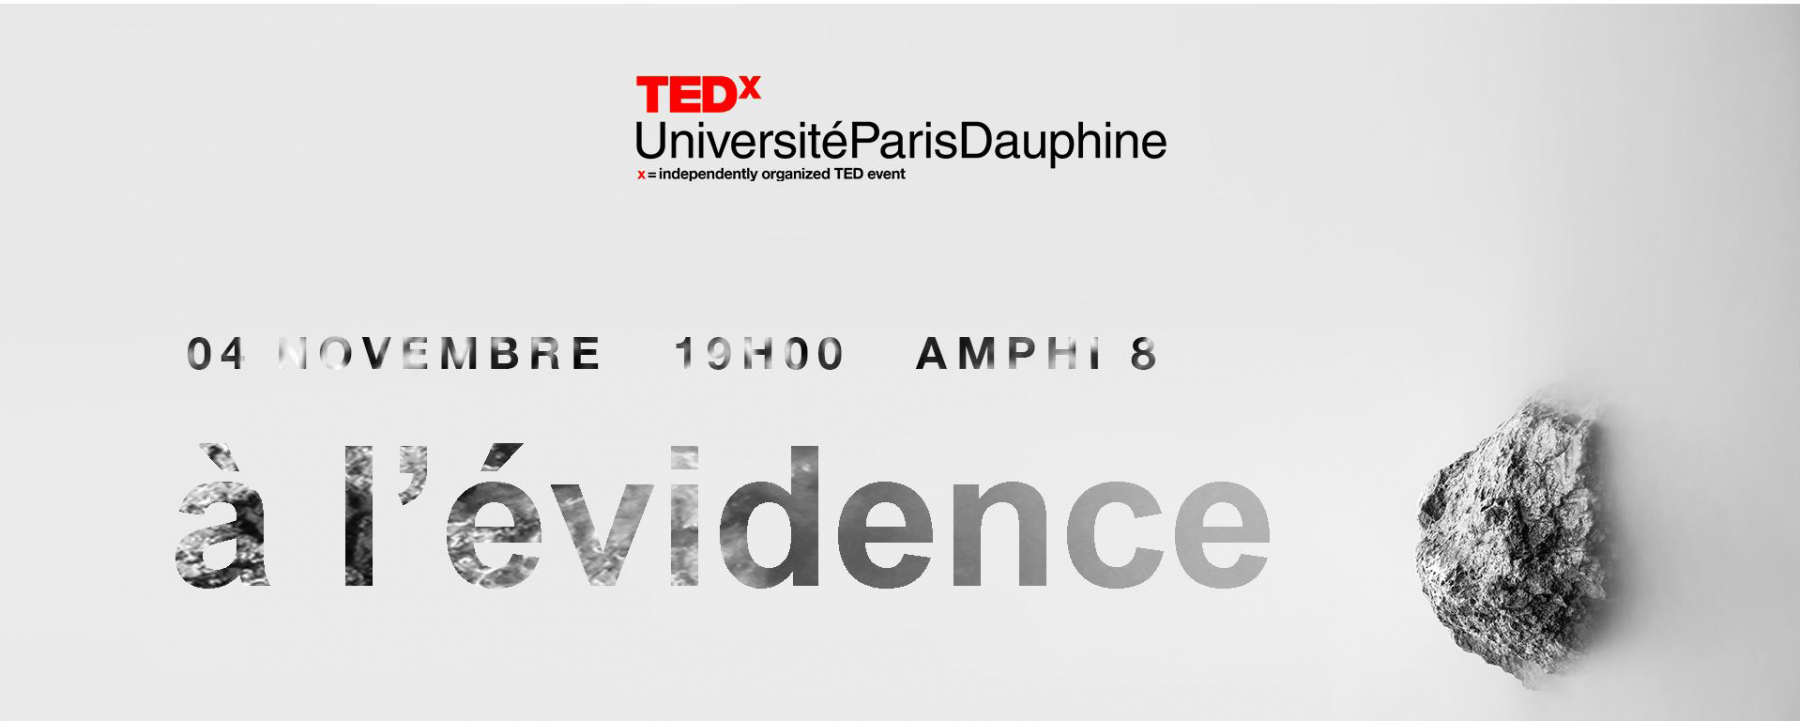 TEDx UniversitéParisDauphine 2019